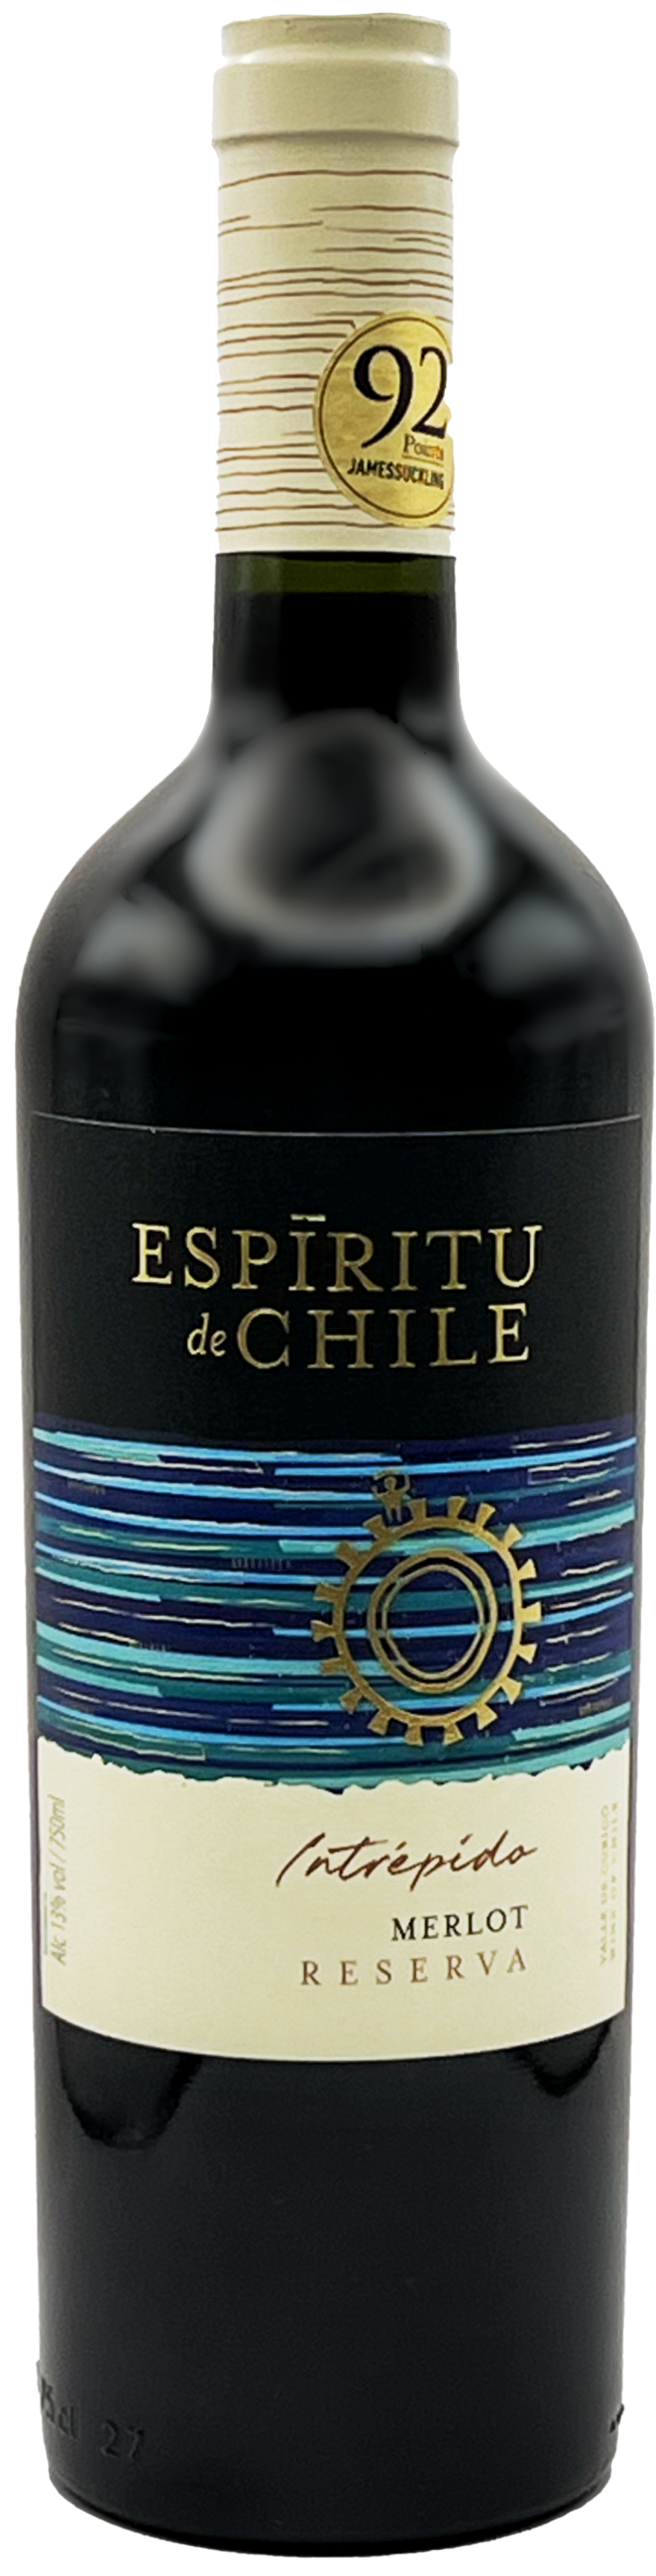 Merlot Espiritu de Reserva - Chile 2019 Bottle Values